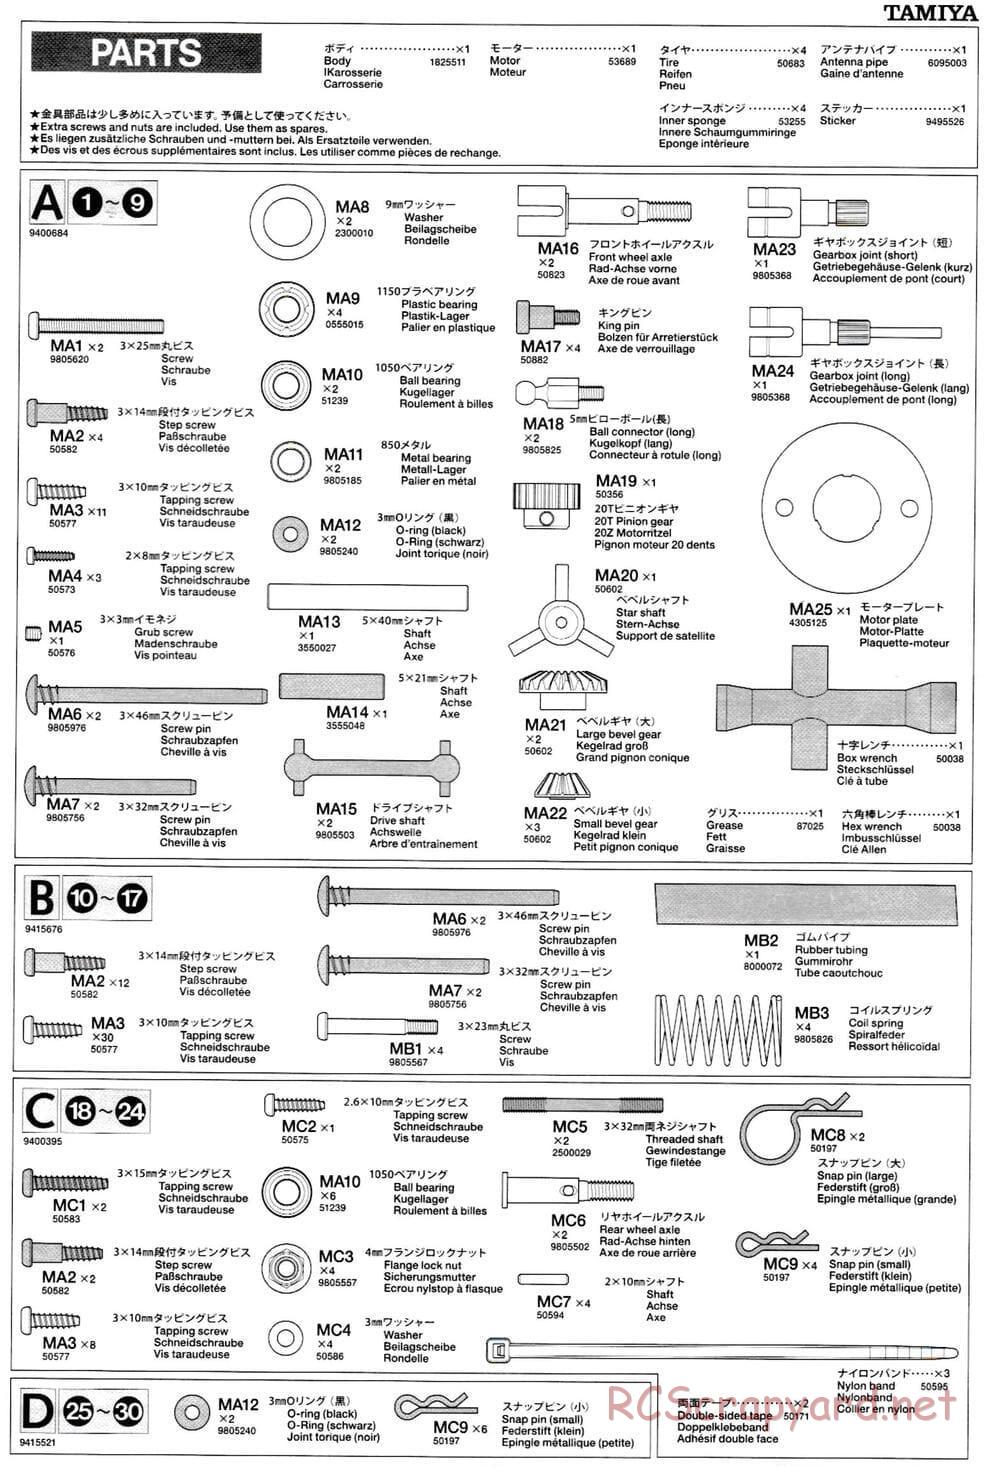 Tamiya - M-03L Chassis - Manual - Page 15